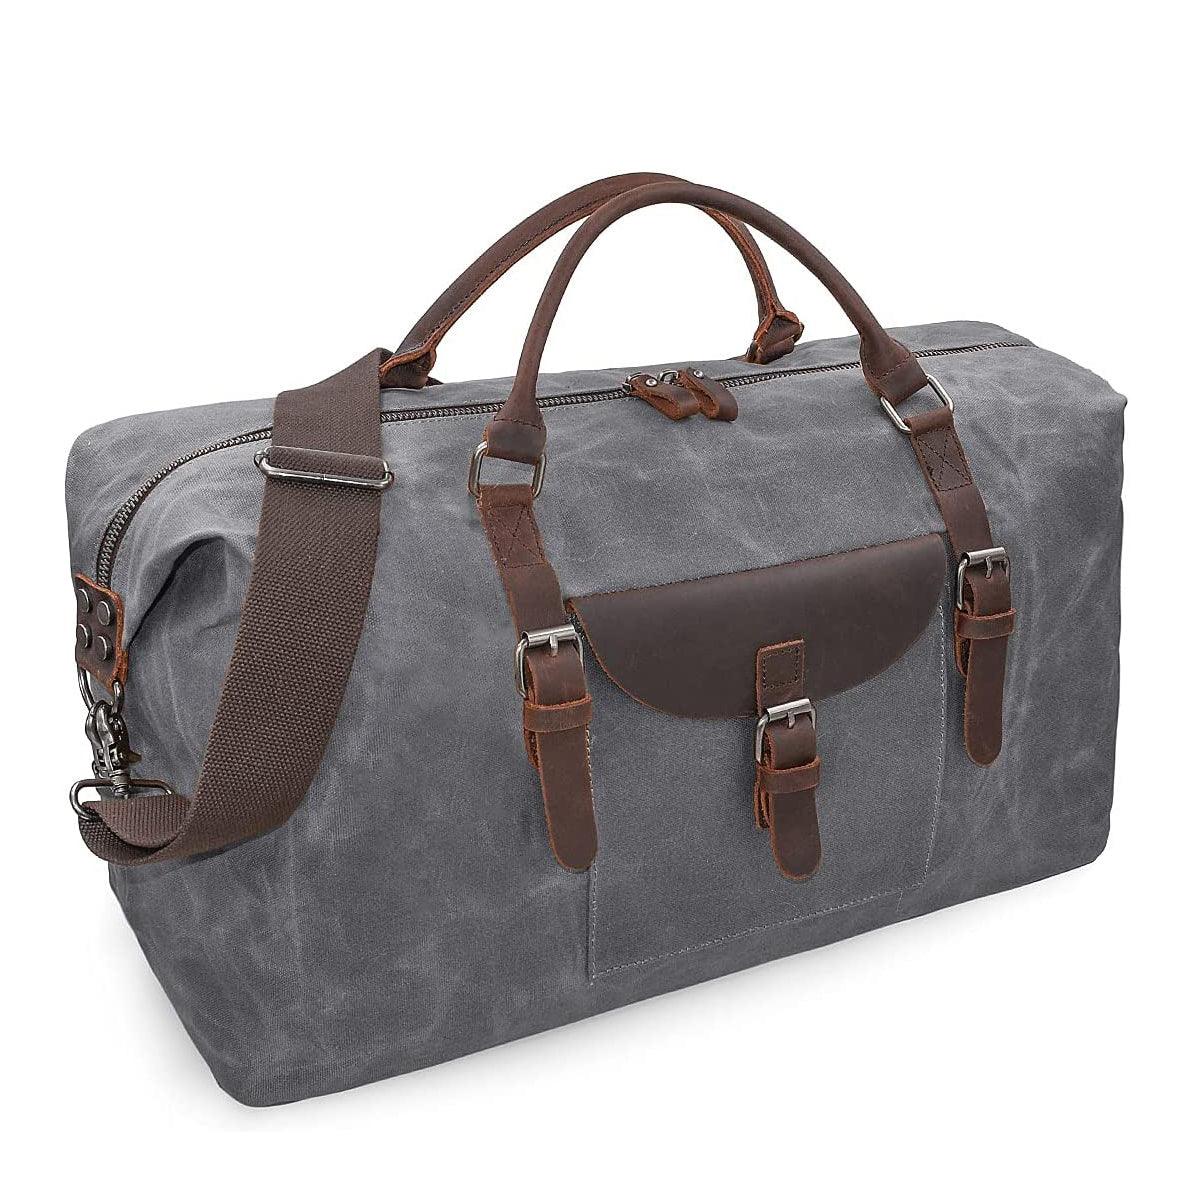 Genuine Leather Duffel Bags - FR Fashion Co.